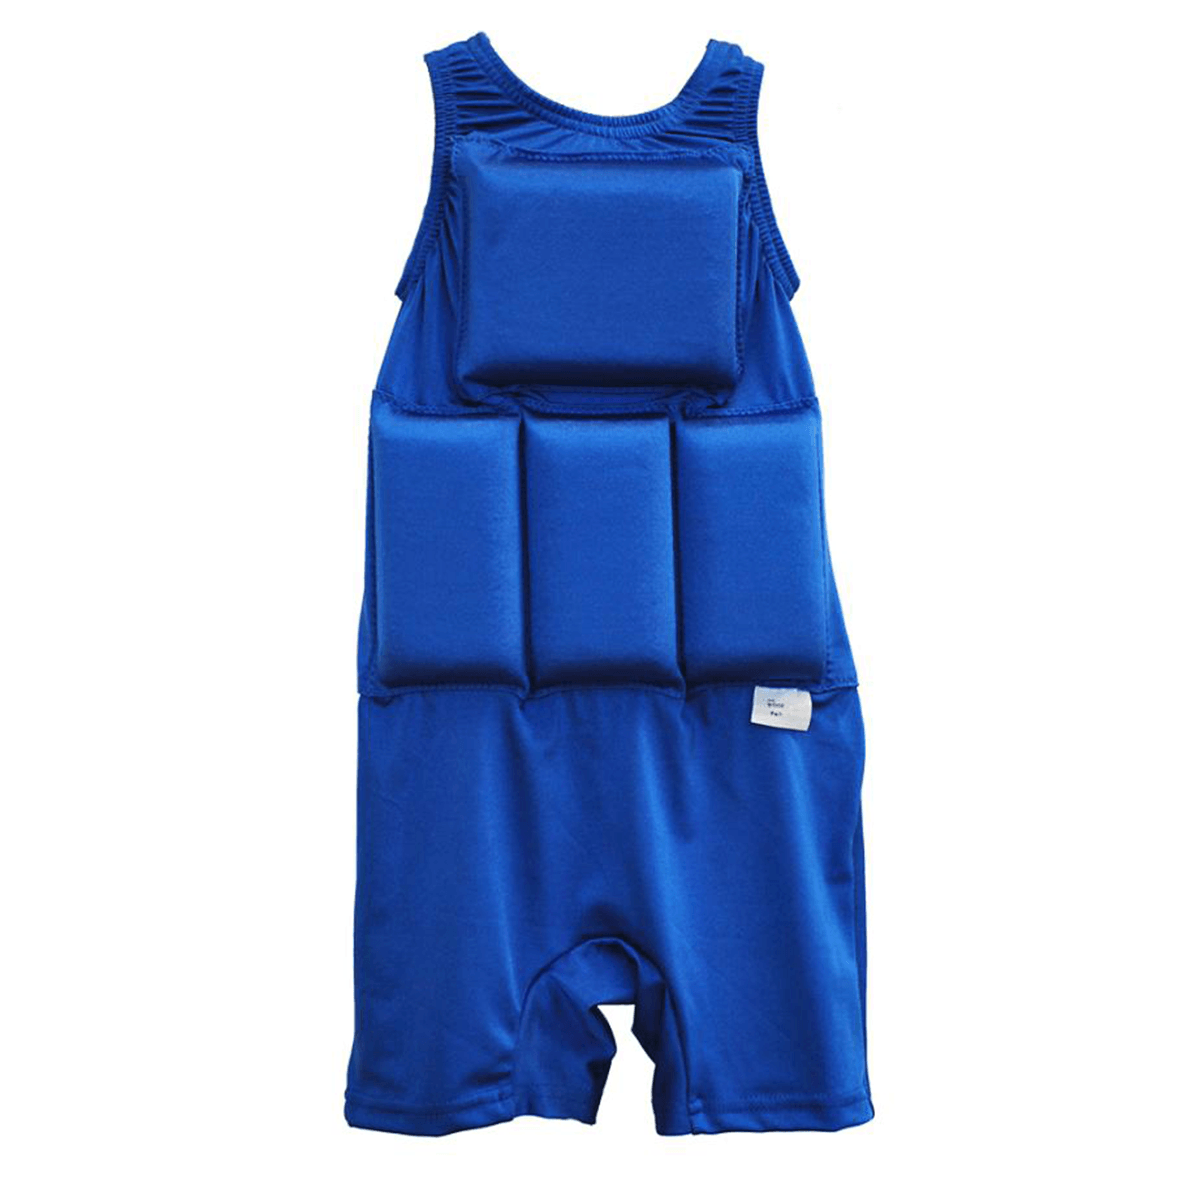 My Pool Pal Boy's Flotation Swimsuit Blue - BoardCo